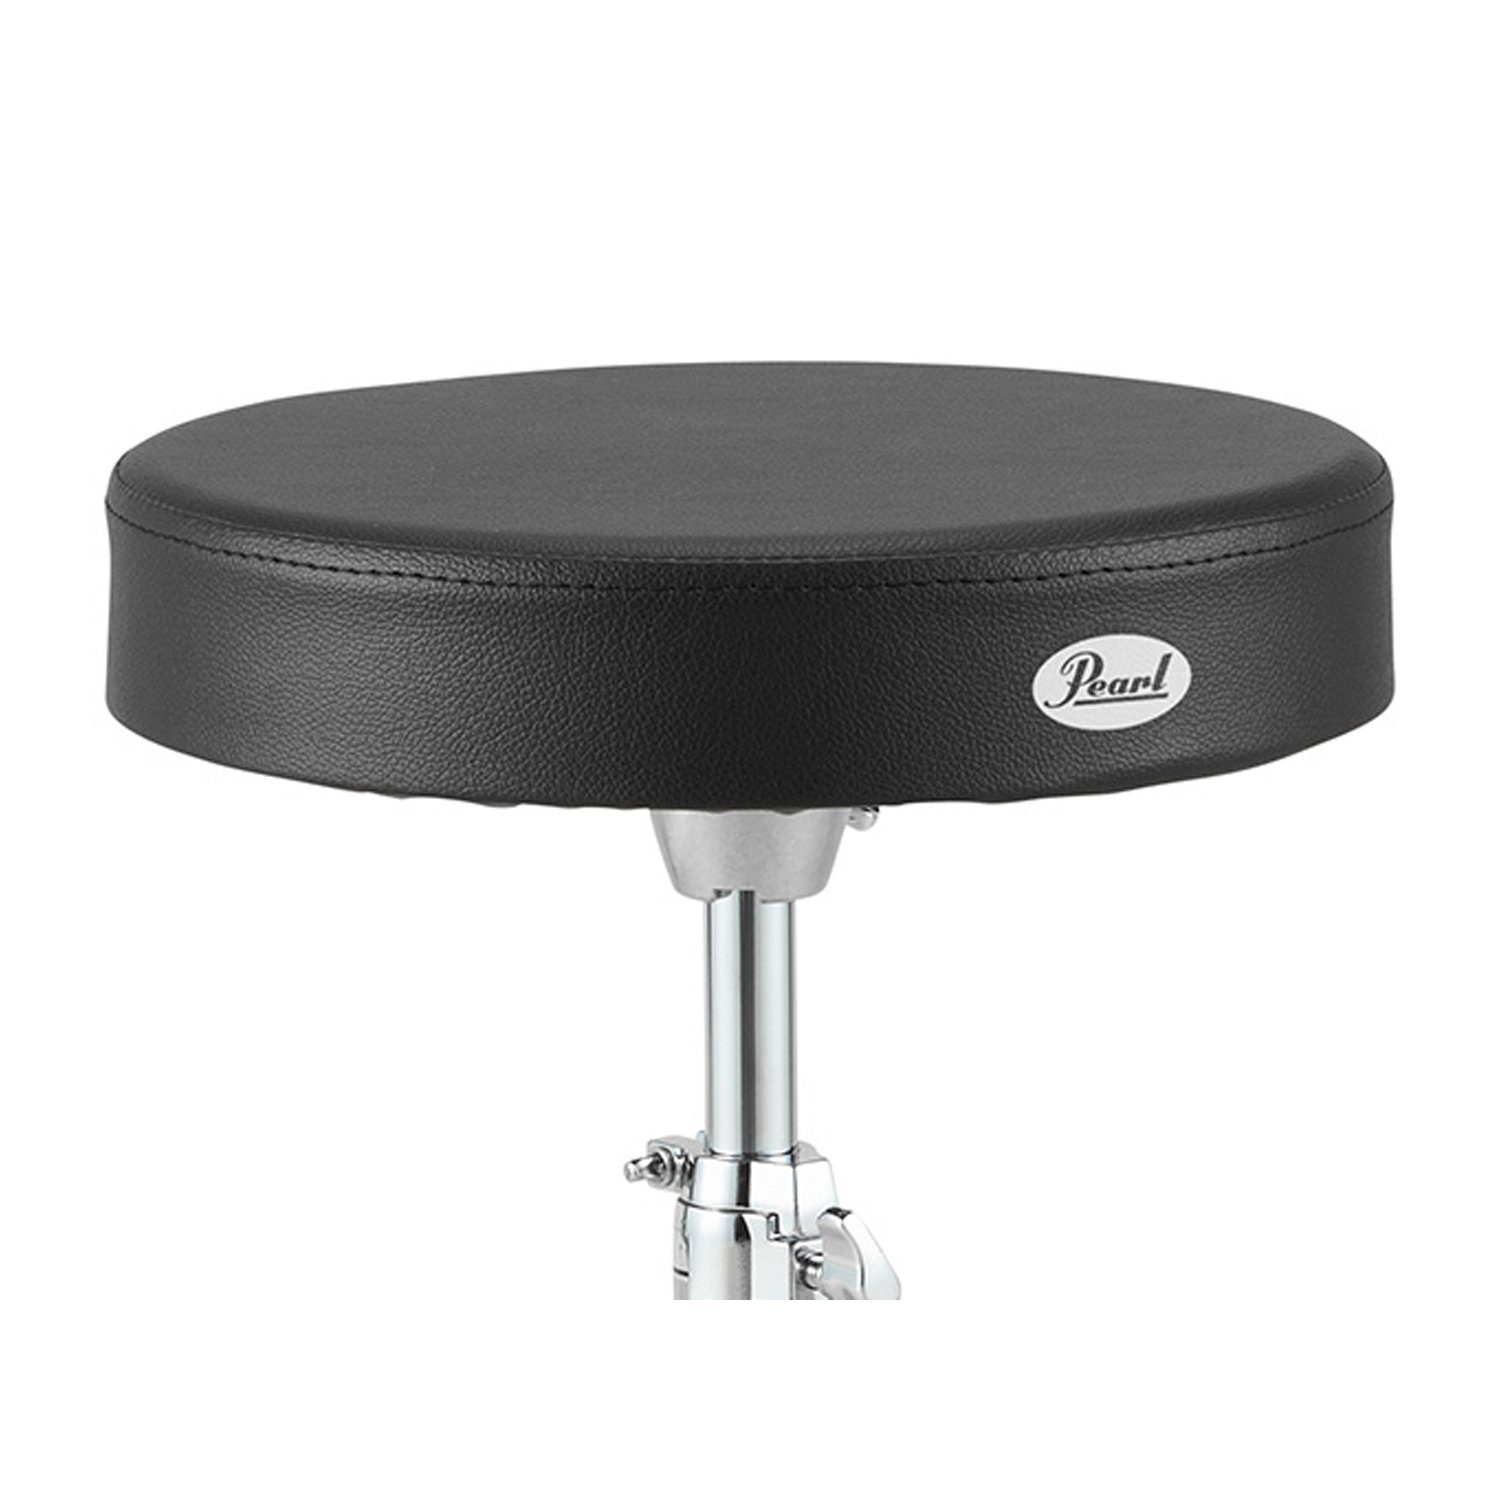 Pearl schwarz), Drums D-790 Höhenverstellbar (Rundsitz, Schlagzeughocker